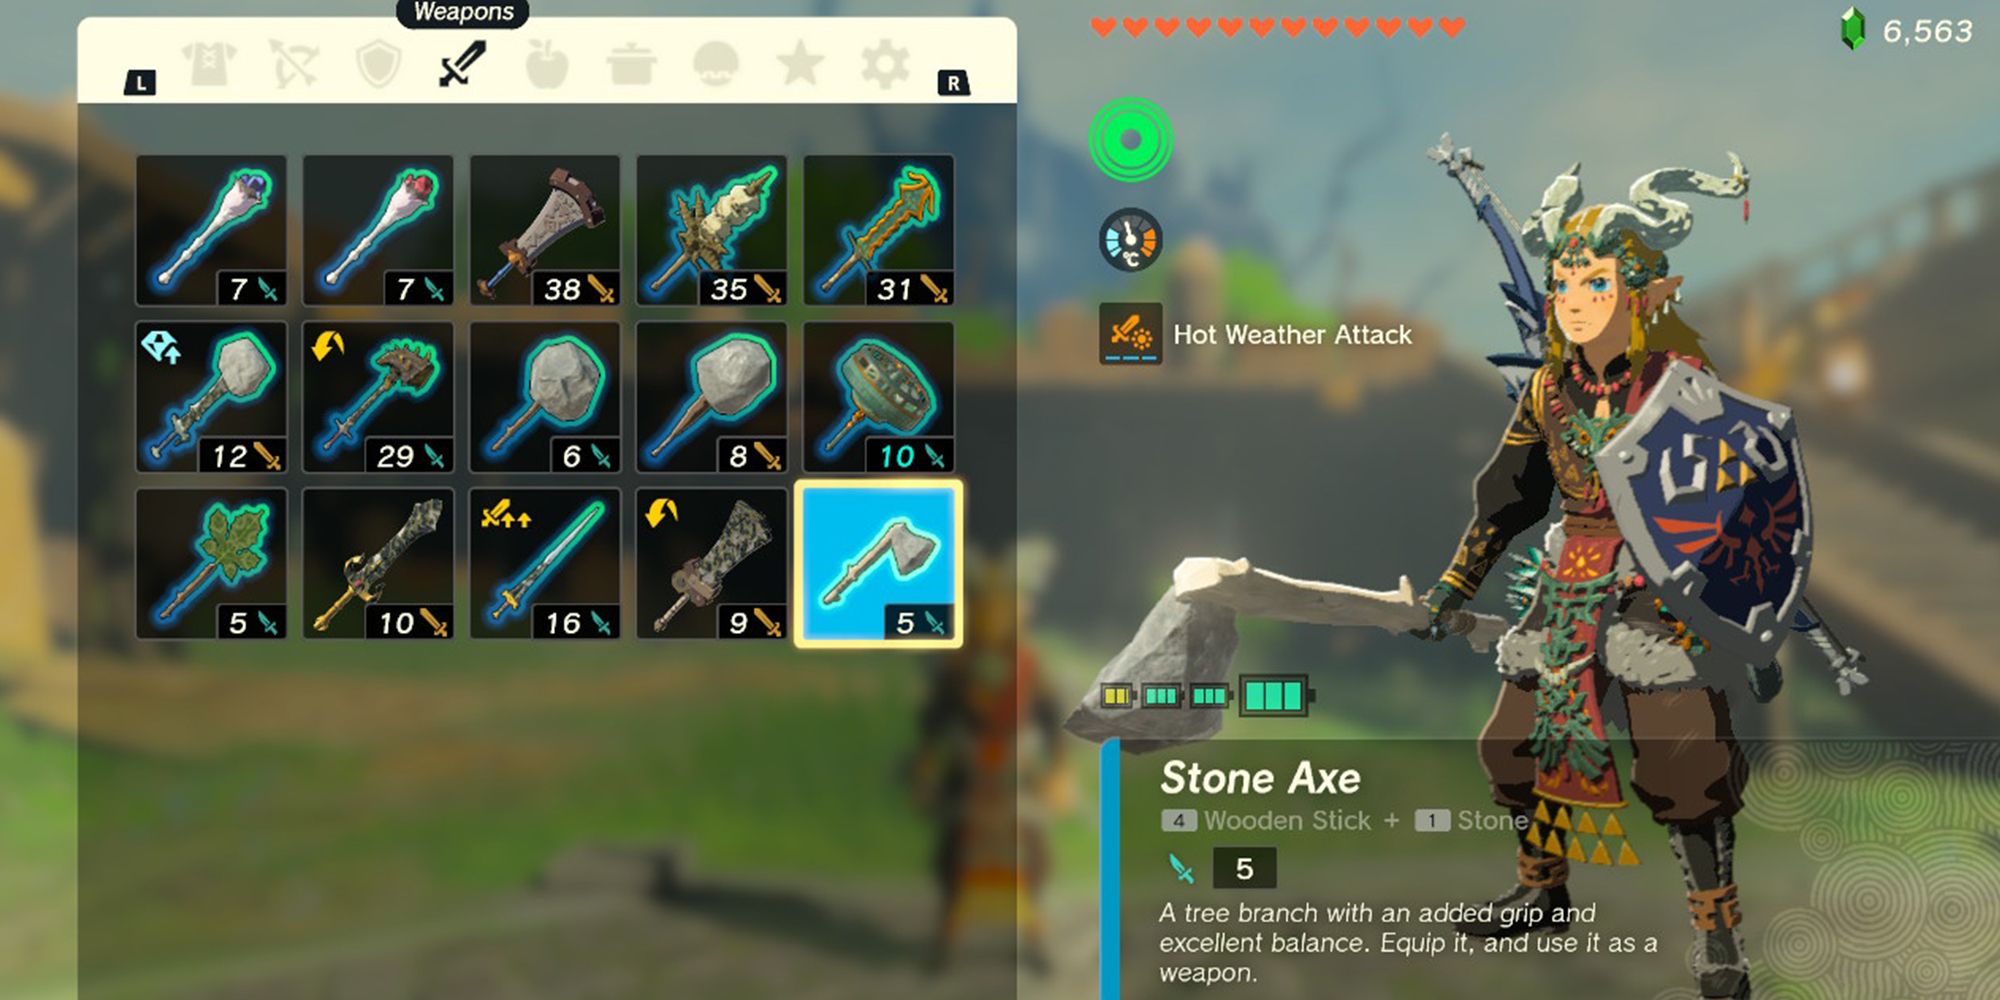 Link wielding Stone Axe